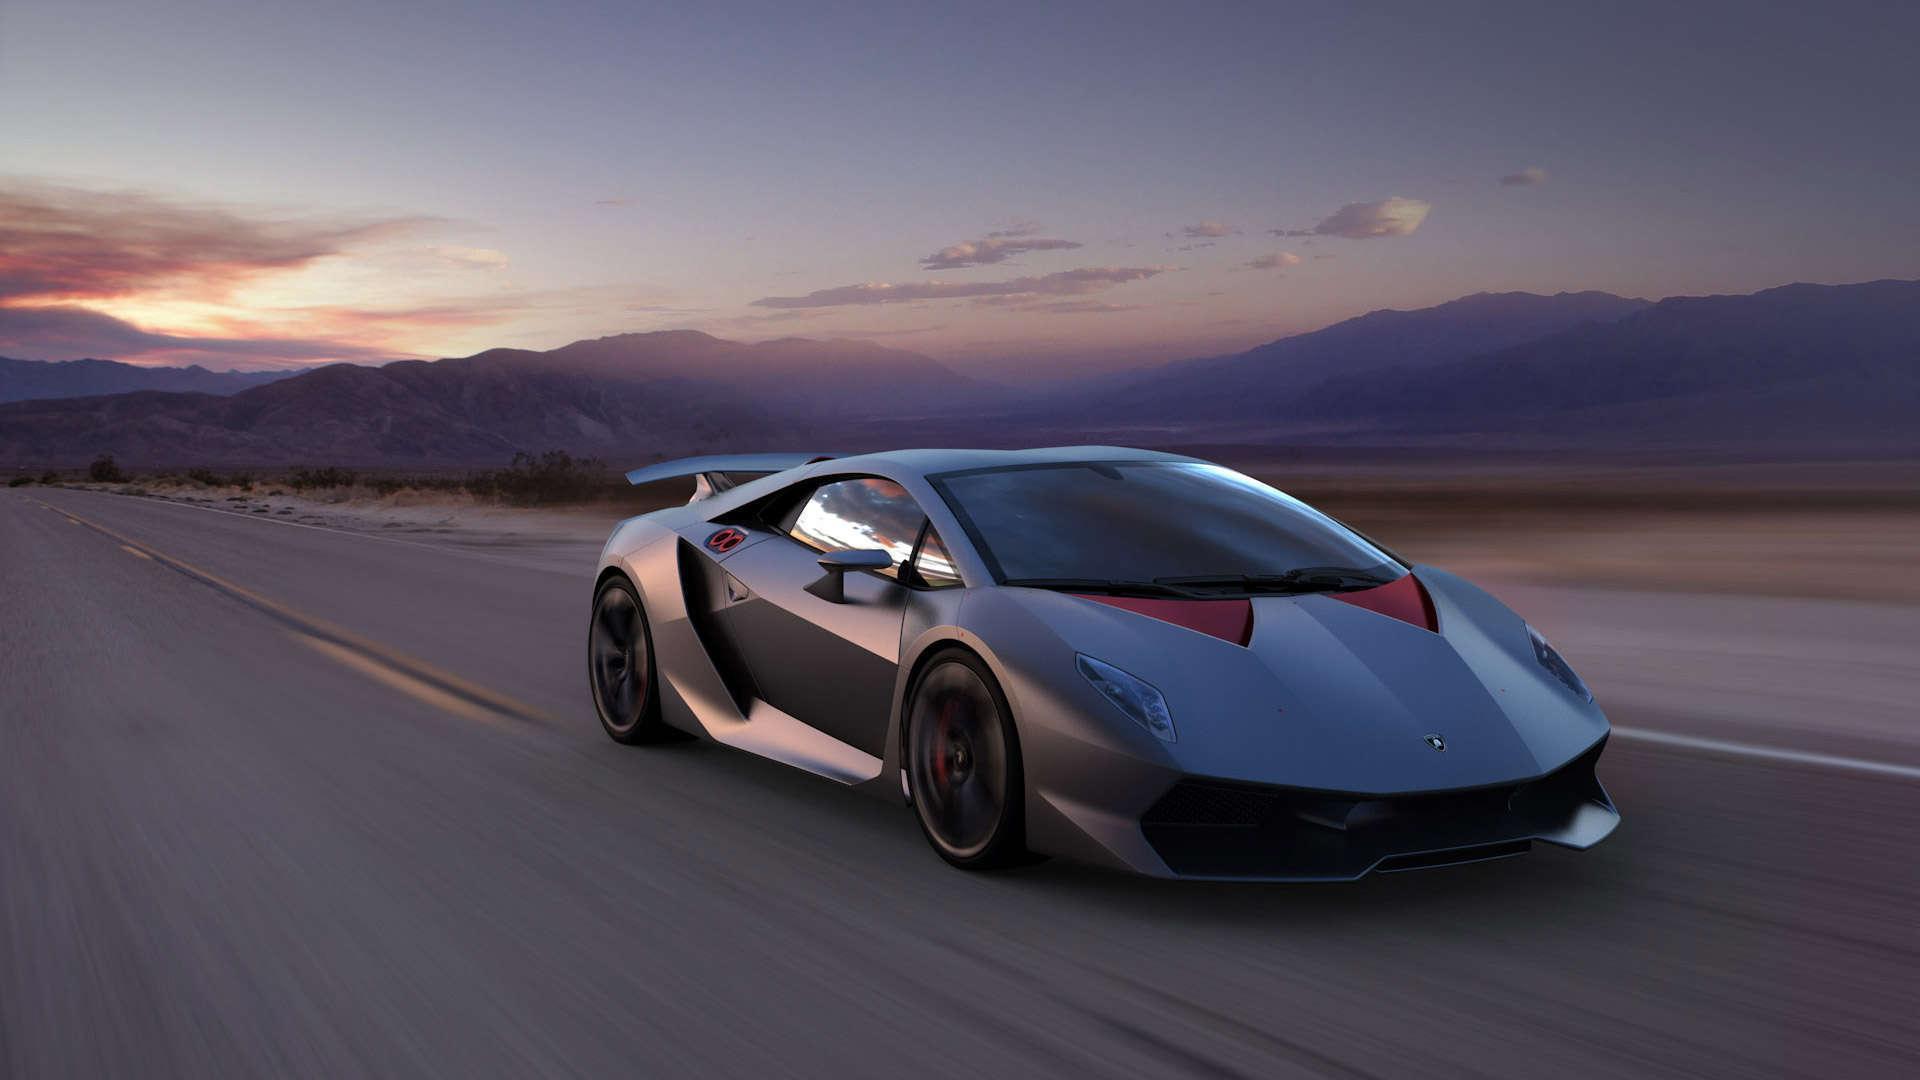 Lamborghini Sesto Elemento Wallpaper, Amazing High Definition